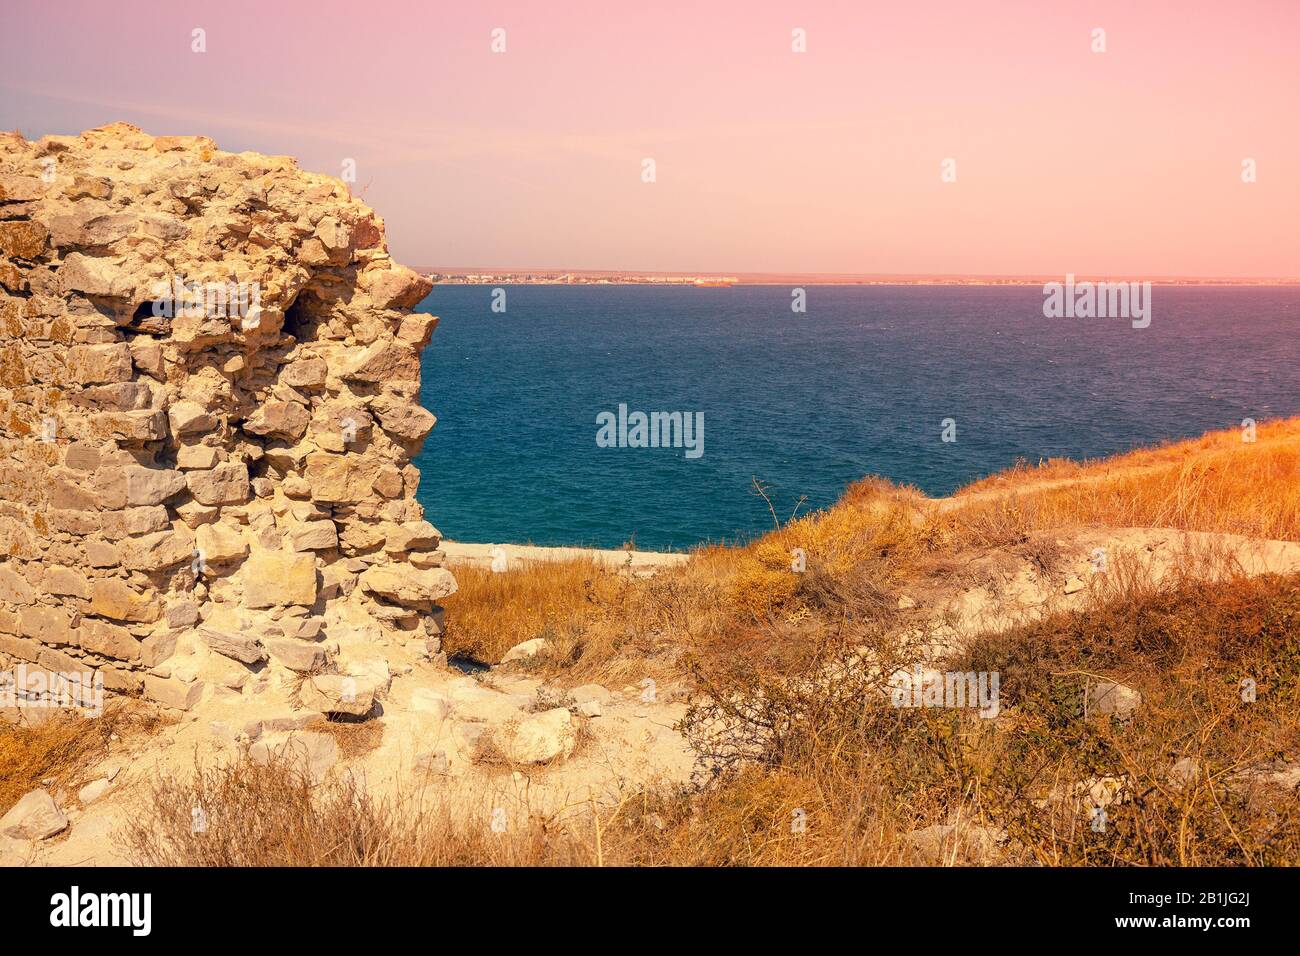 Ruinen der genuesischen Festung Caffa (Feodosia) Krim. Blick vom Berg auf das Meer und die Stadt Feodosia. Natur im Meer Stockfoto